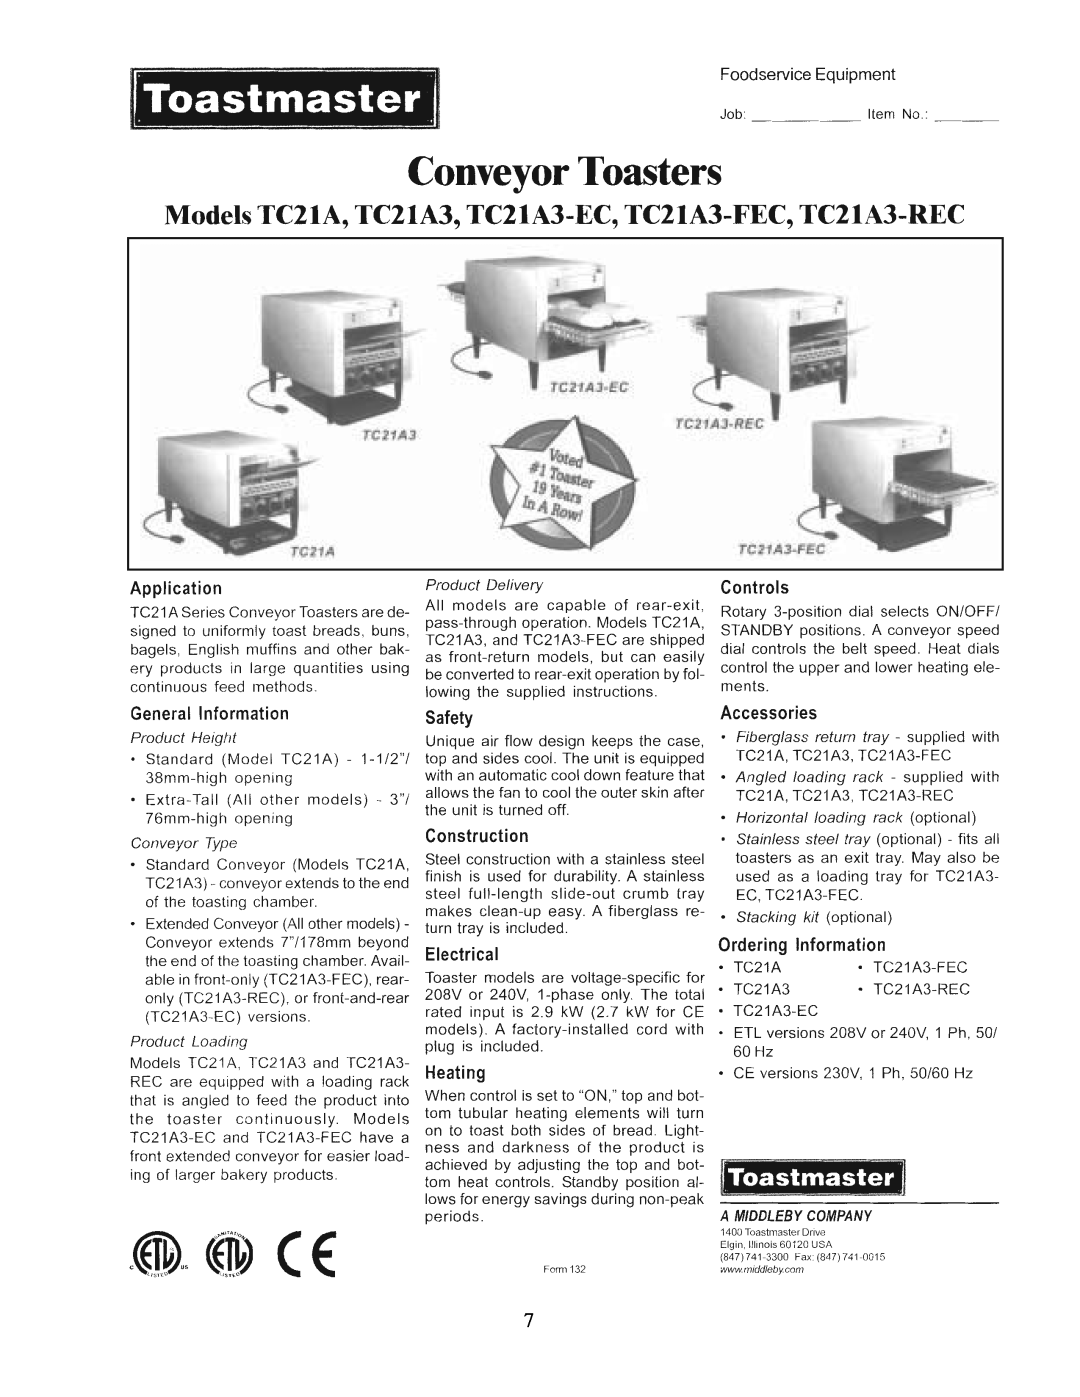 Toastmaster TC21A, TC17A manual 